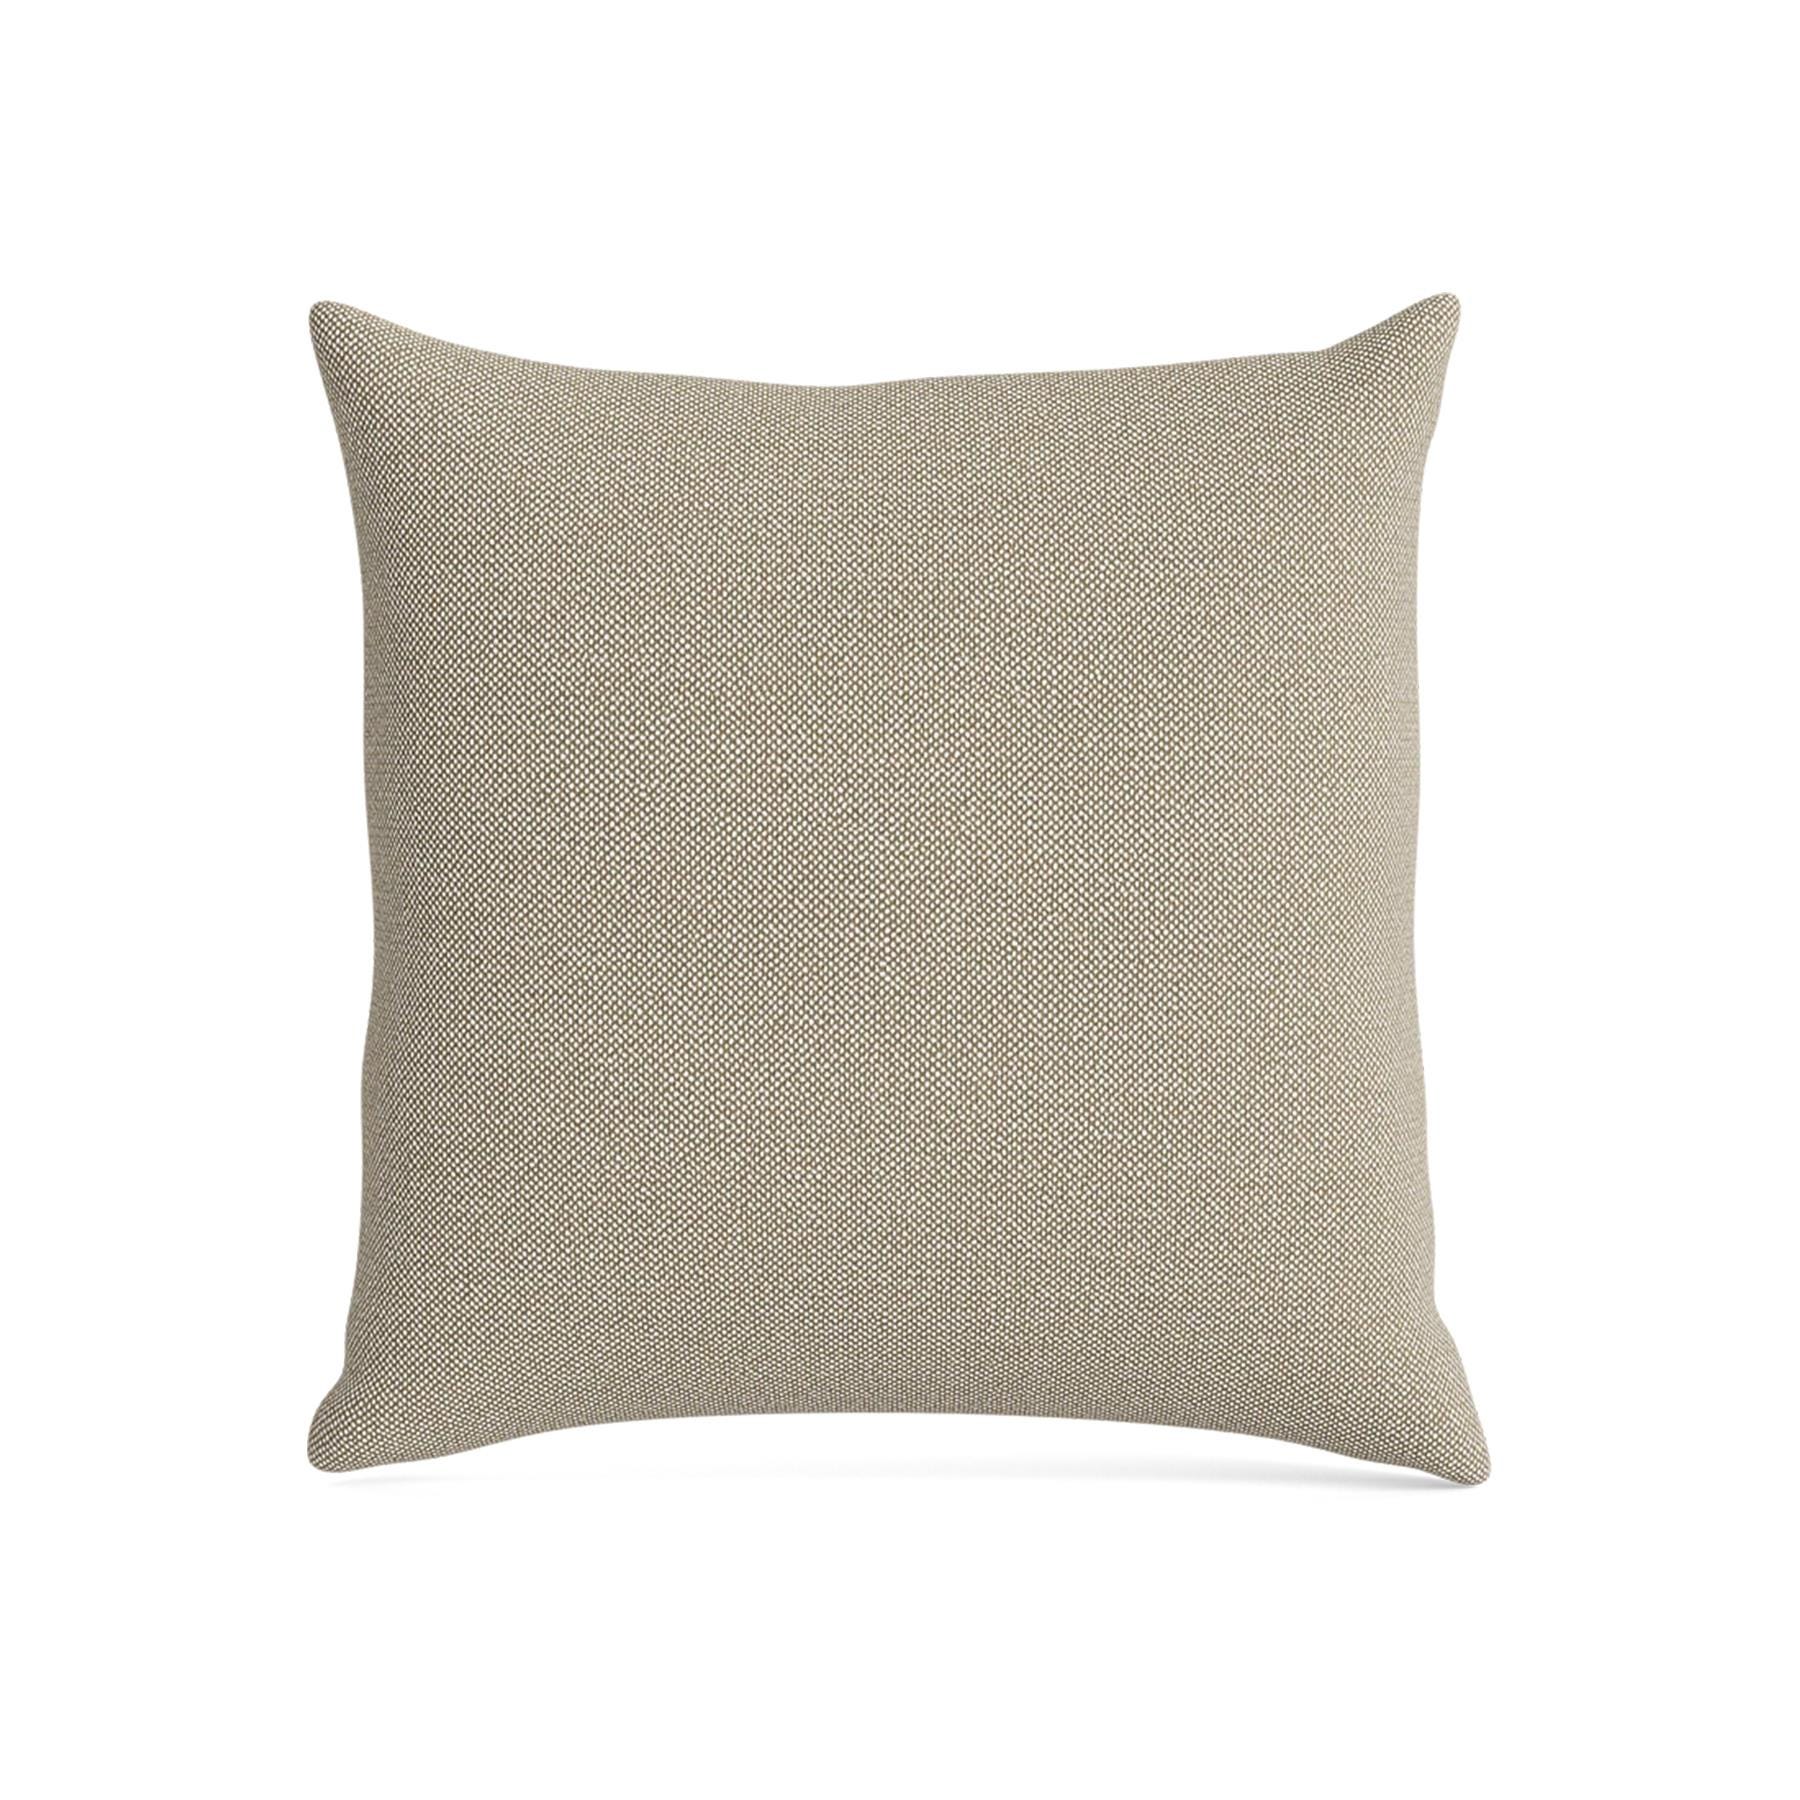 Make Nordic Pillow 50cmx50cm Hallingdal 220 Down And Fibers Brown